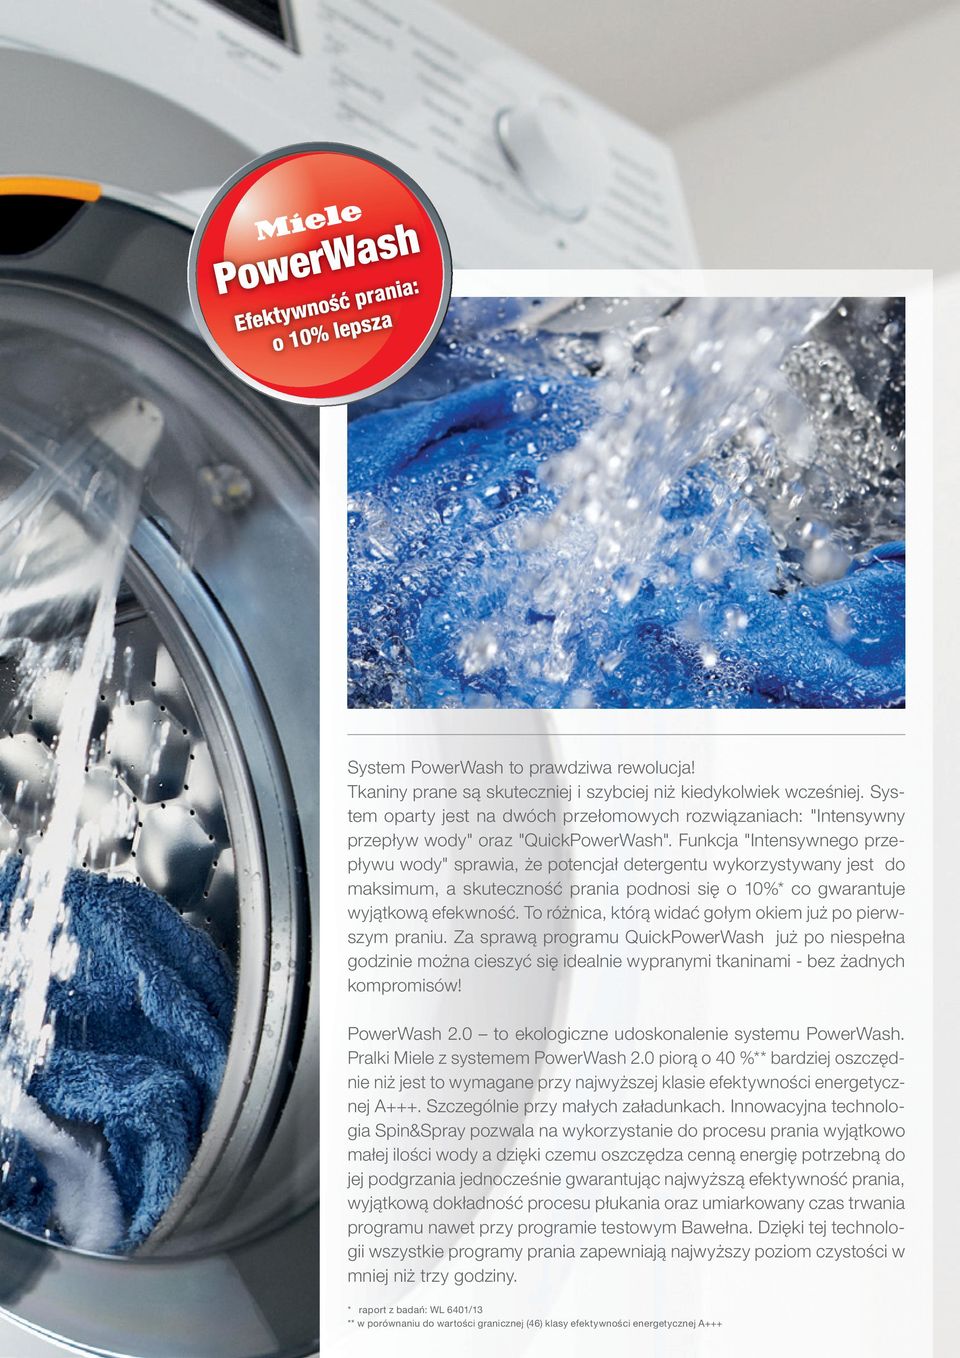 Funkcja "Intensywnego przepływu wody" sprawia, że potencjał detergentu wykorzystywany jest do maksimum, a skuteczność prania podnosi się o 10%* co gwarantuje wyjątkową efekwność.